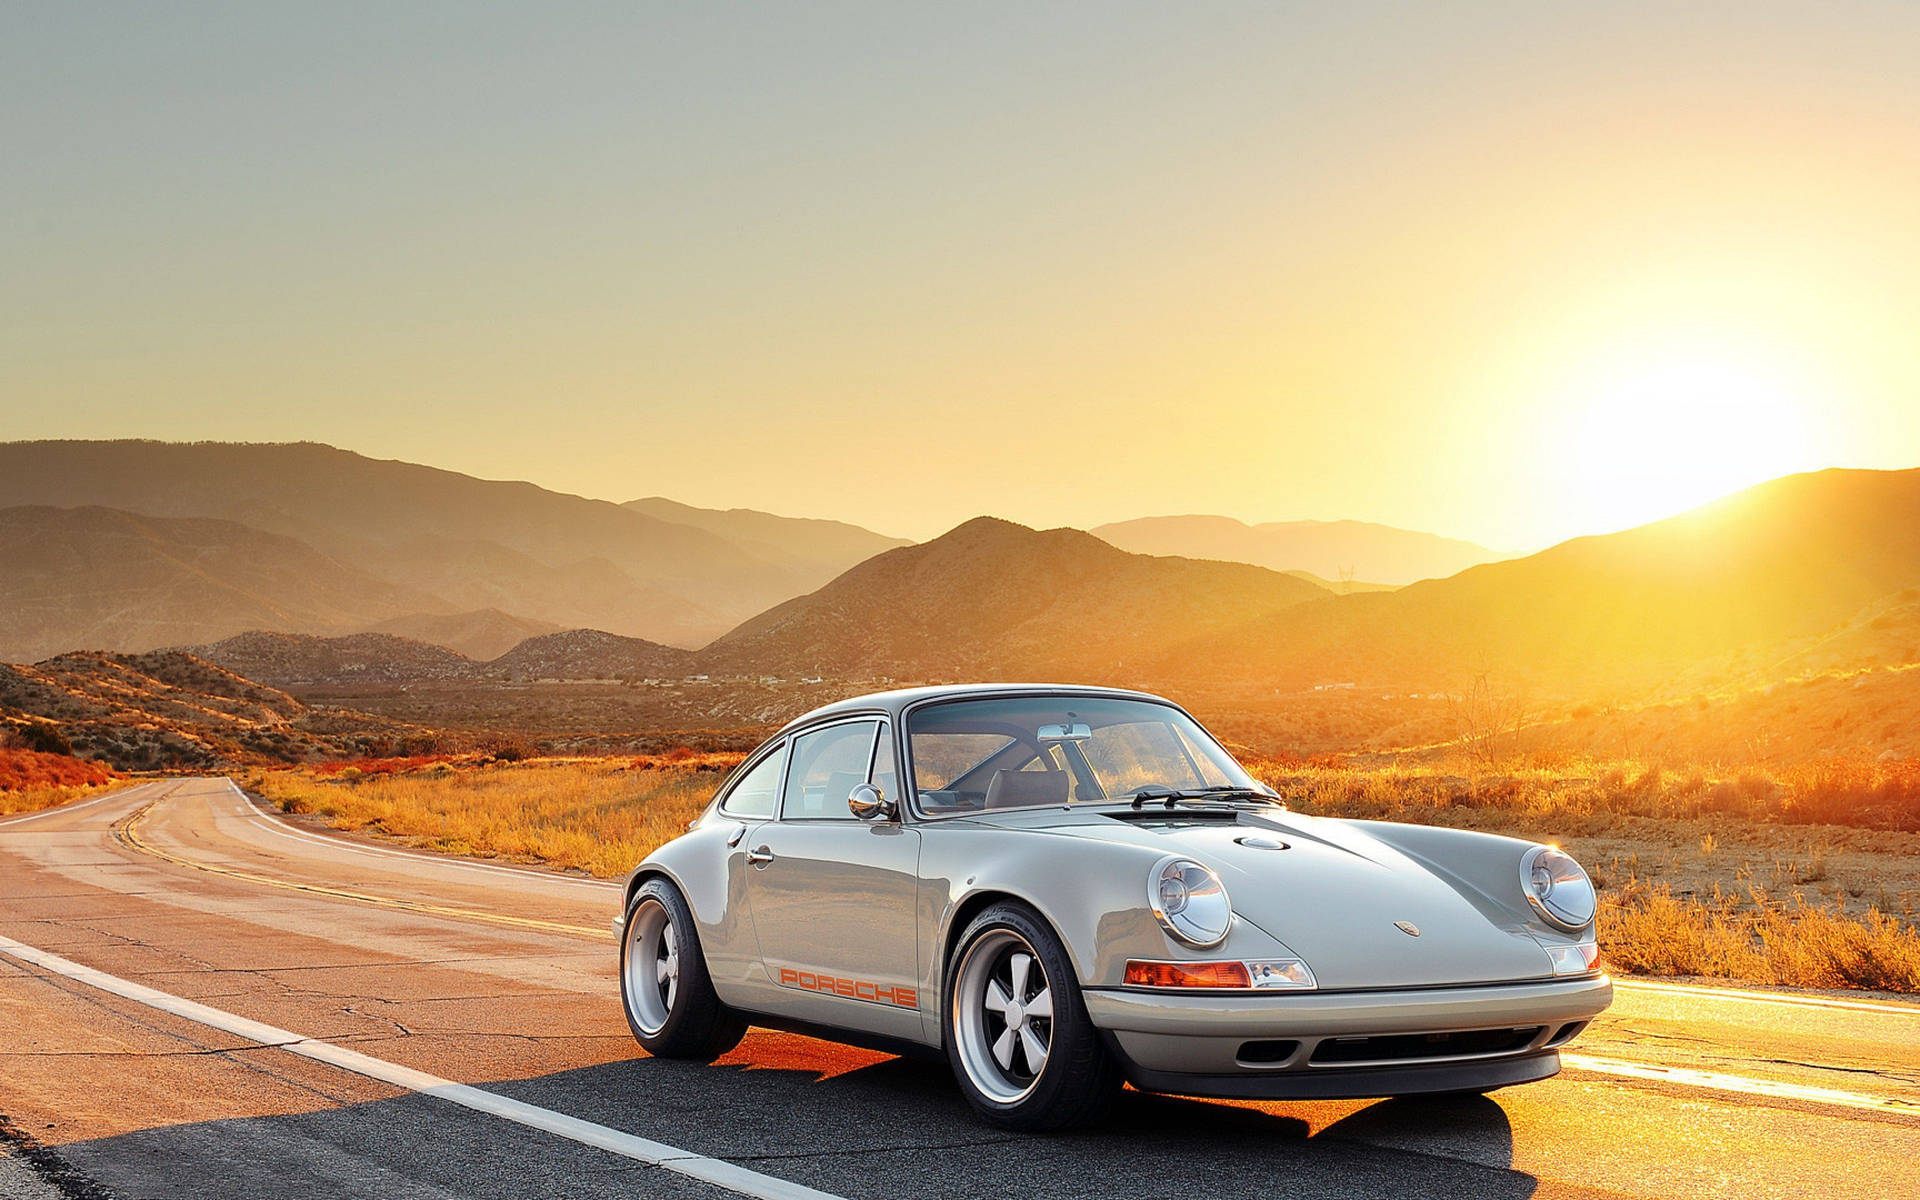 Porsche 911 And Golden Sunrise Background